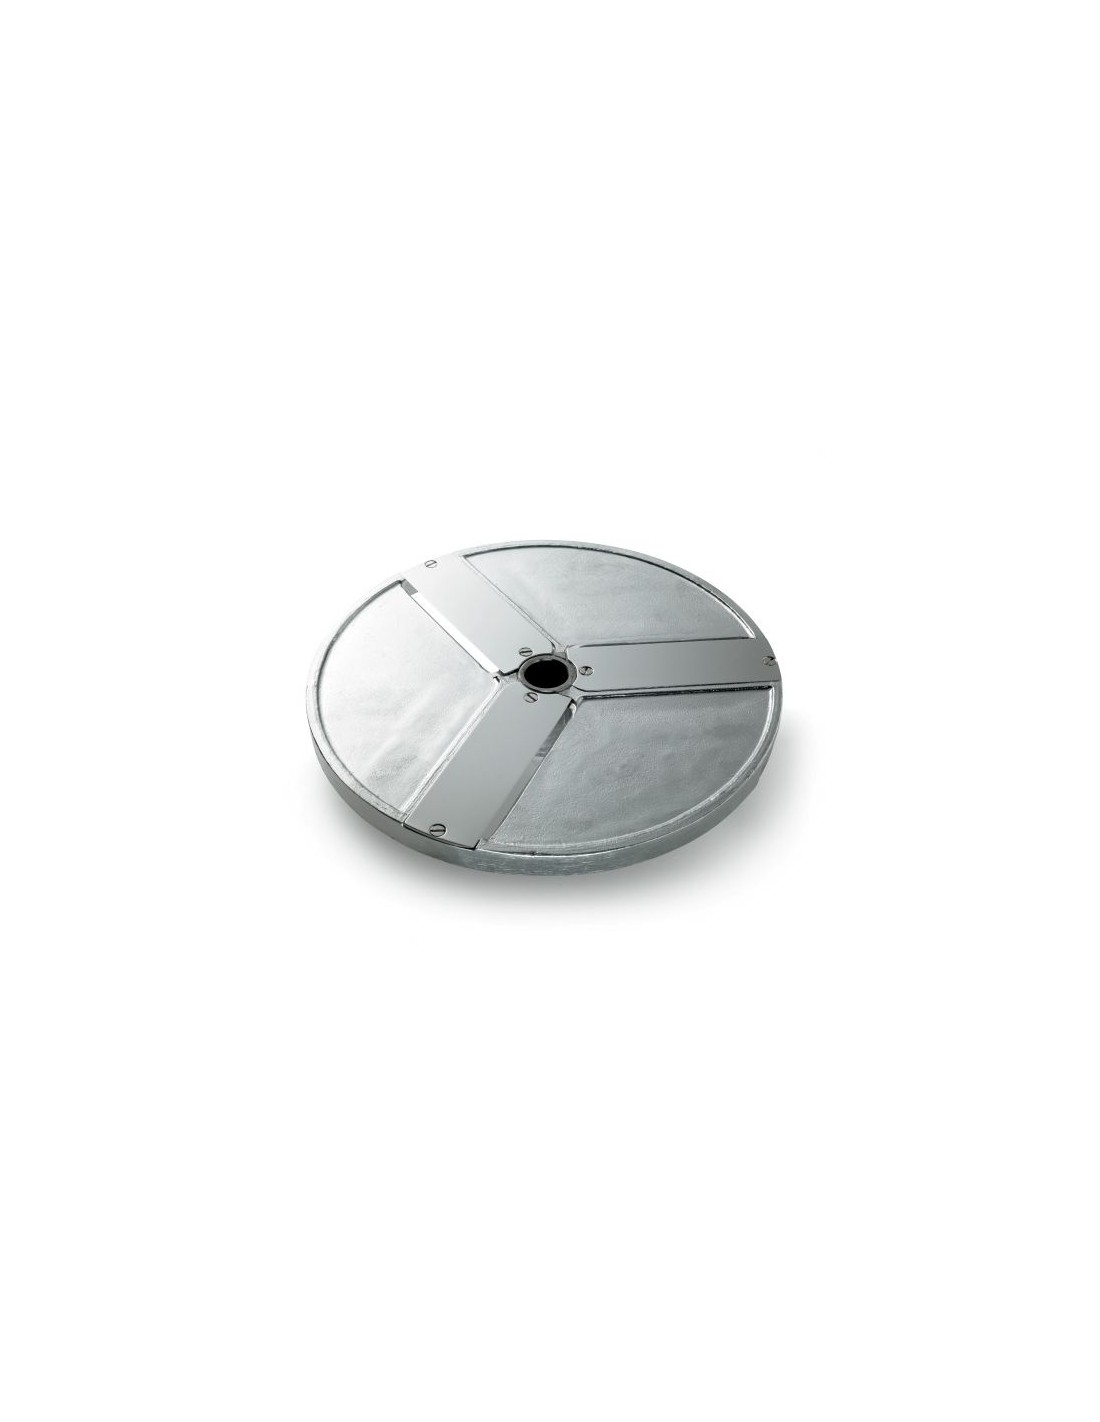 Disco para cortes - Diámetro 205 mm - - Grosor de corte 10 mm